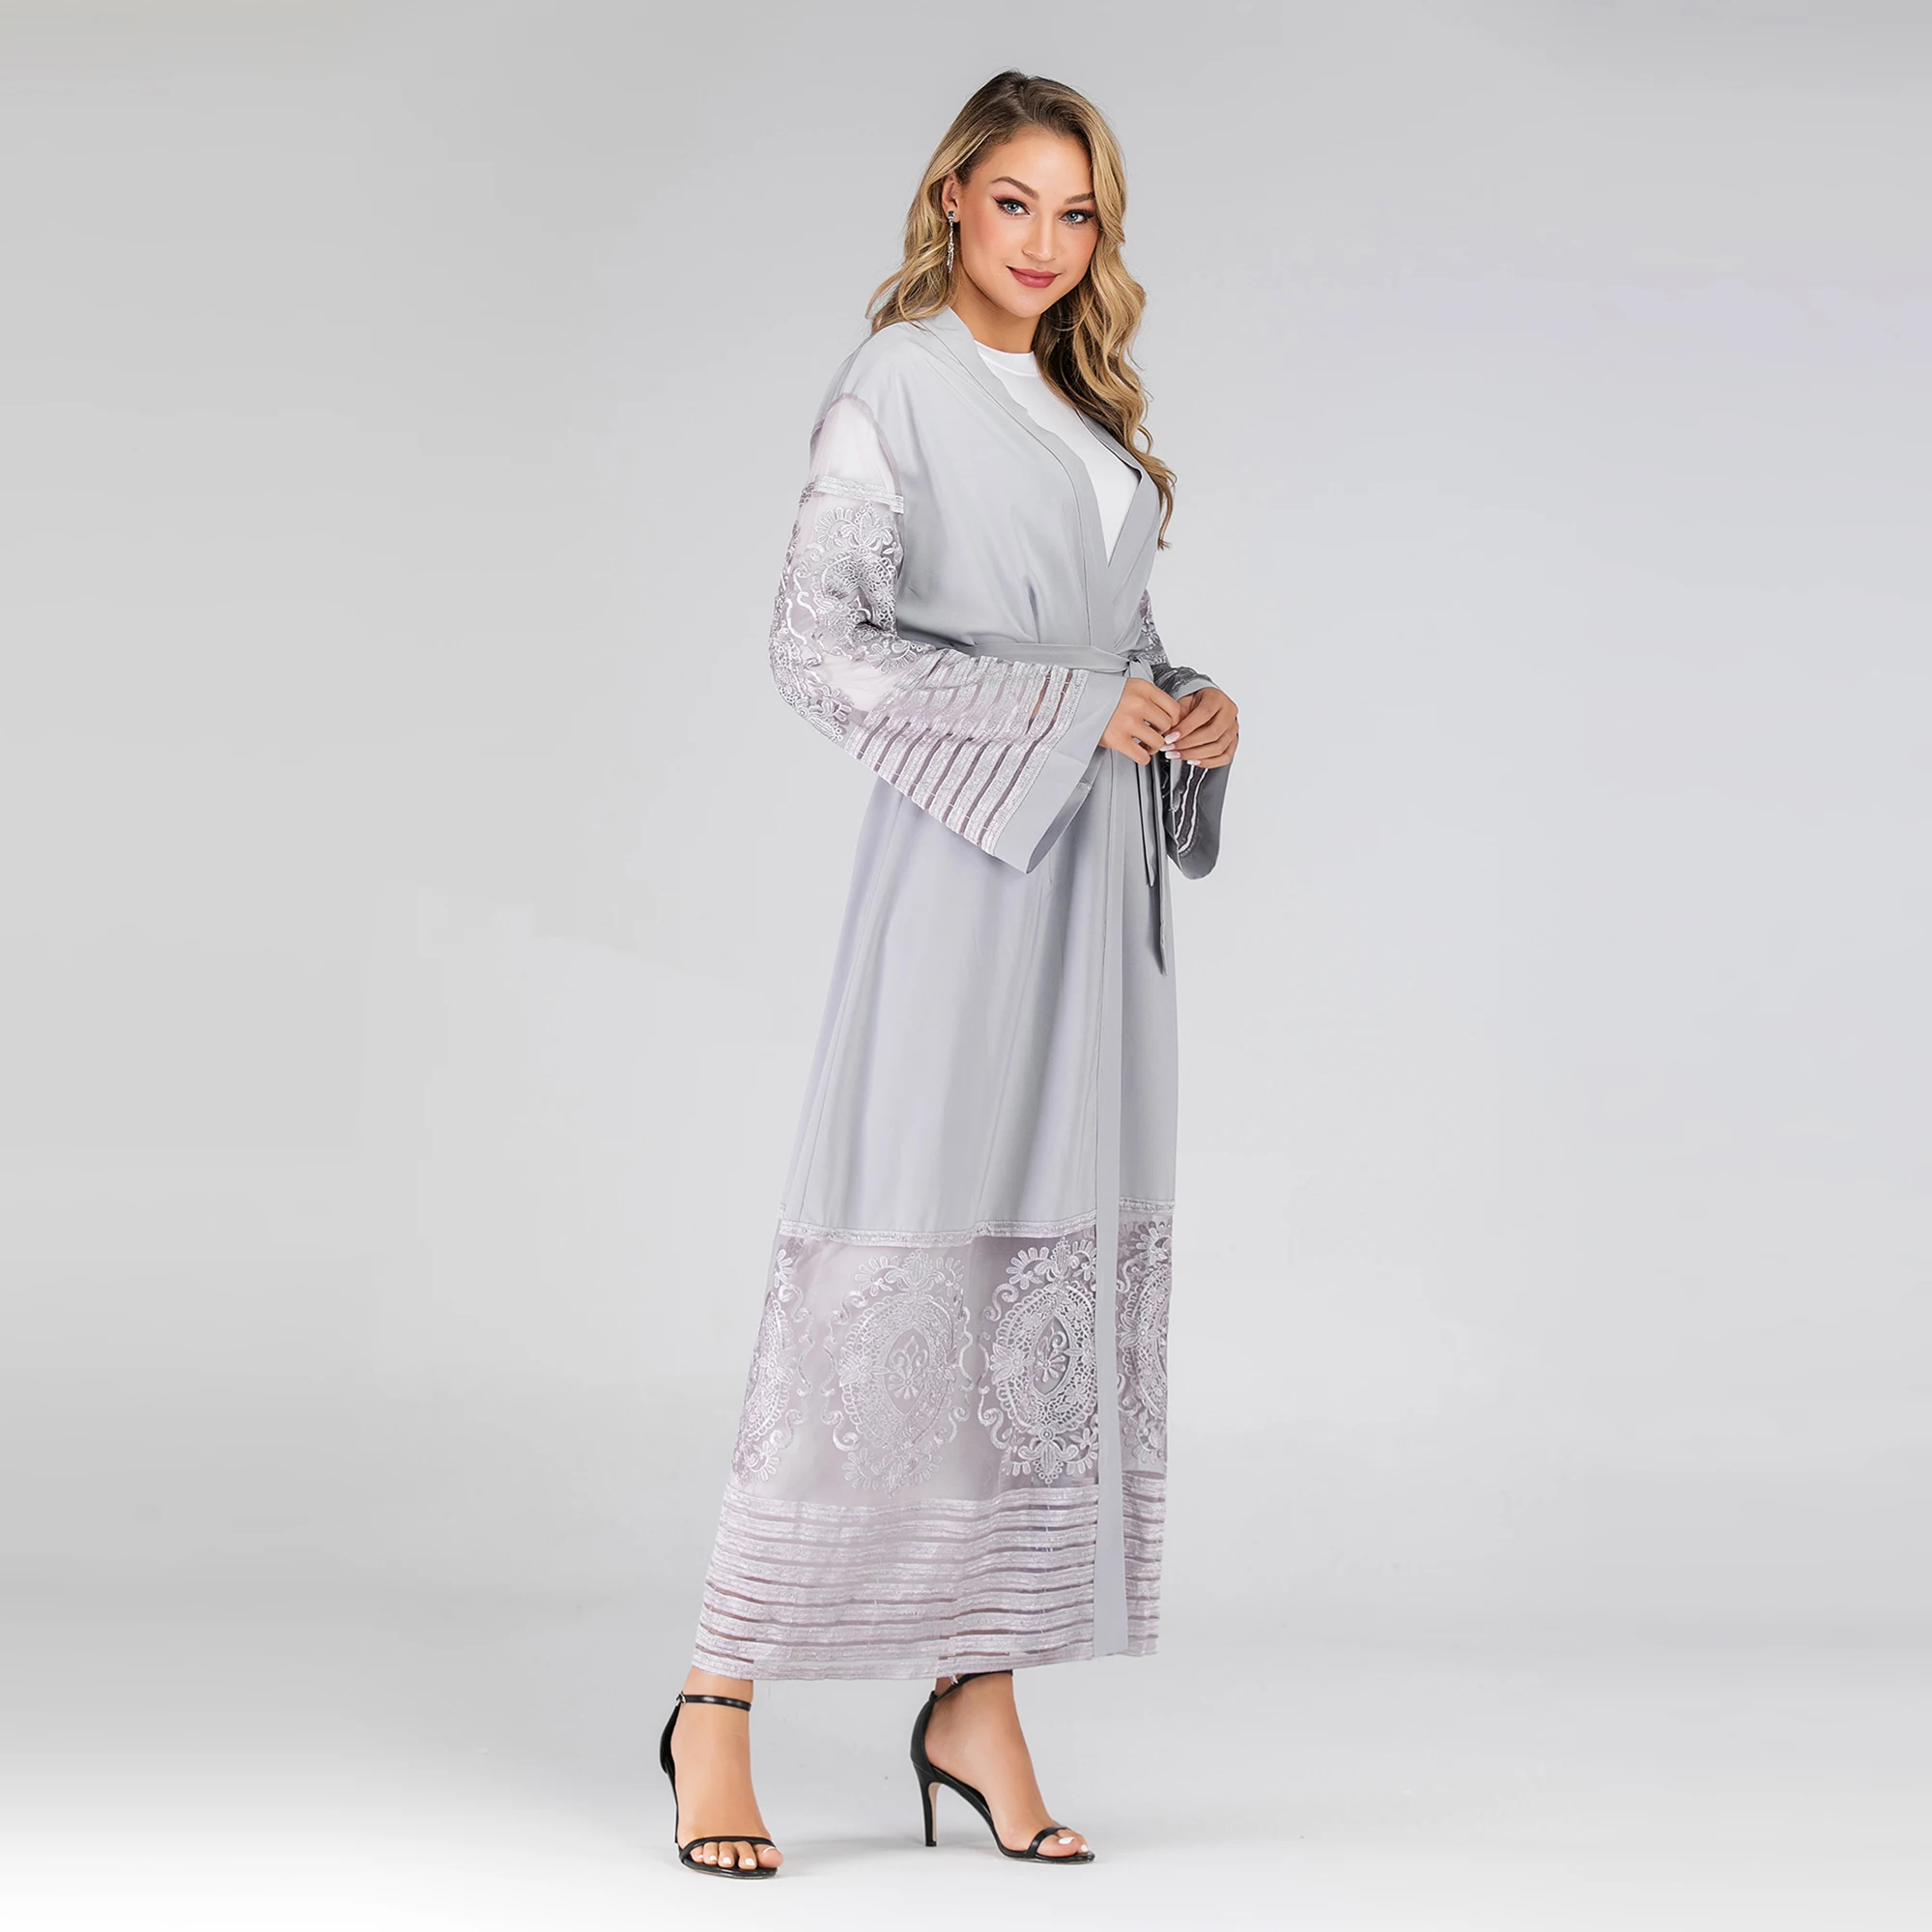 1546 Muslimah Fashion Baju  Kurung 2021 New Model Abaya  In 